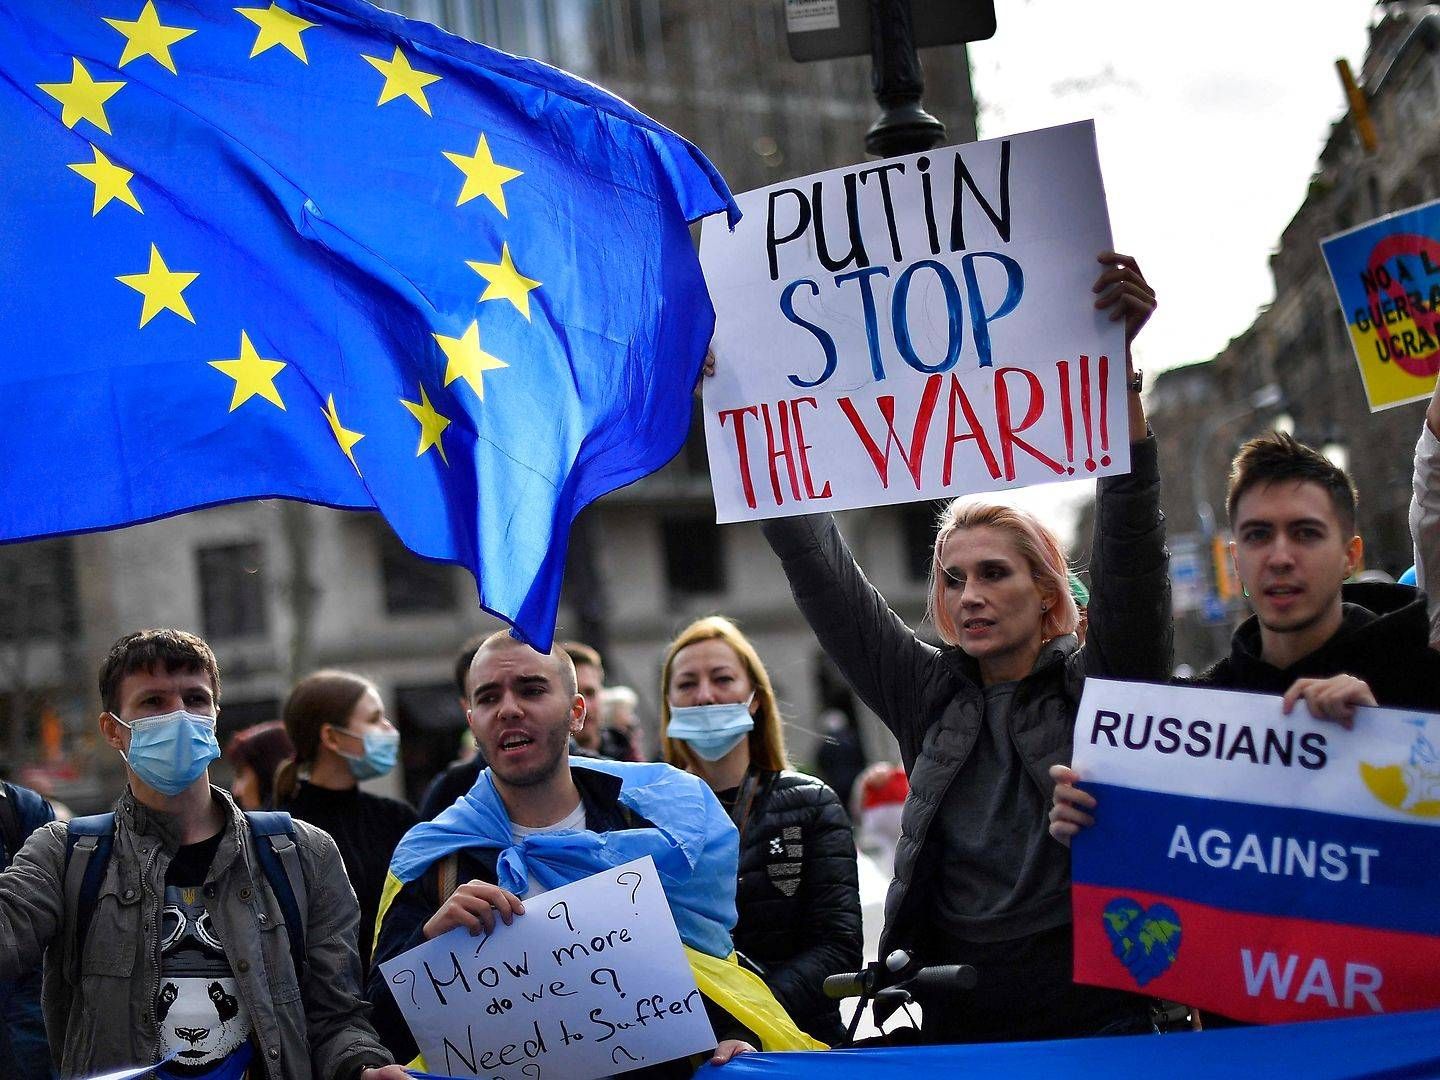 Flere byer verden over har vist sin sympati med Ukraine ved at demonstrere for fred. Her er flere stimlet sammen foran EU-kommissionens lokale kontor i Barcelona, Spanien. | Foto: Pau Barrena/AFP/Ritzau Scanpix